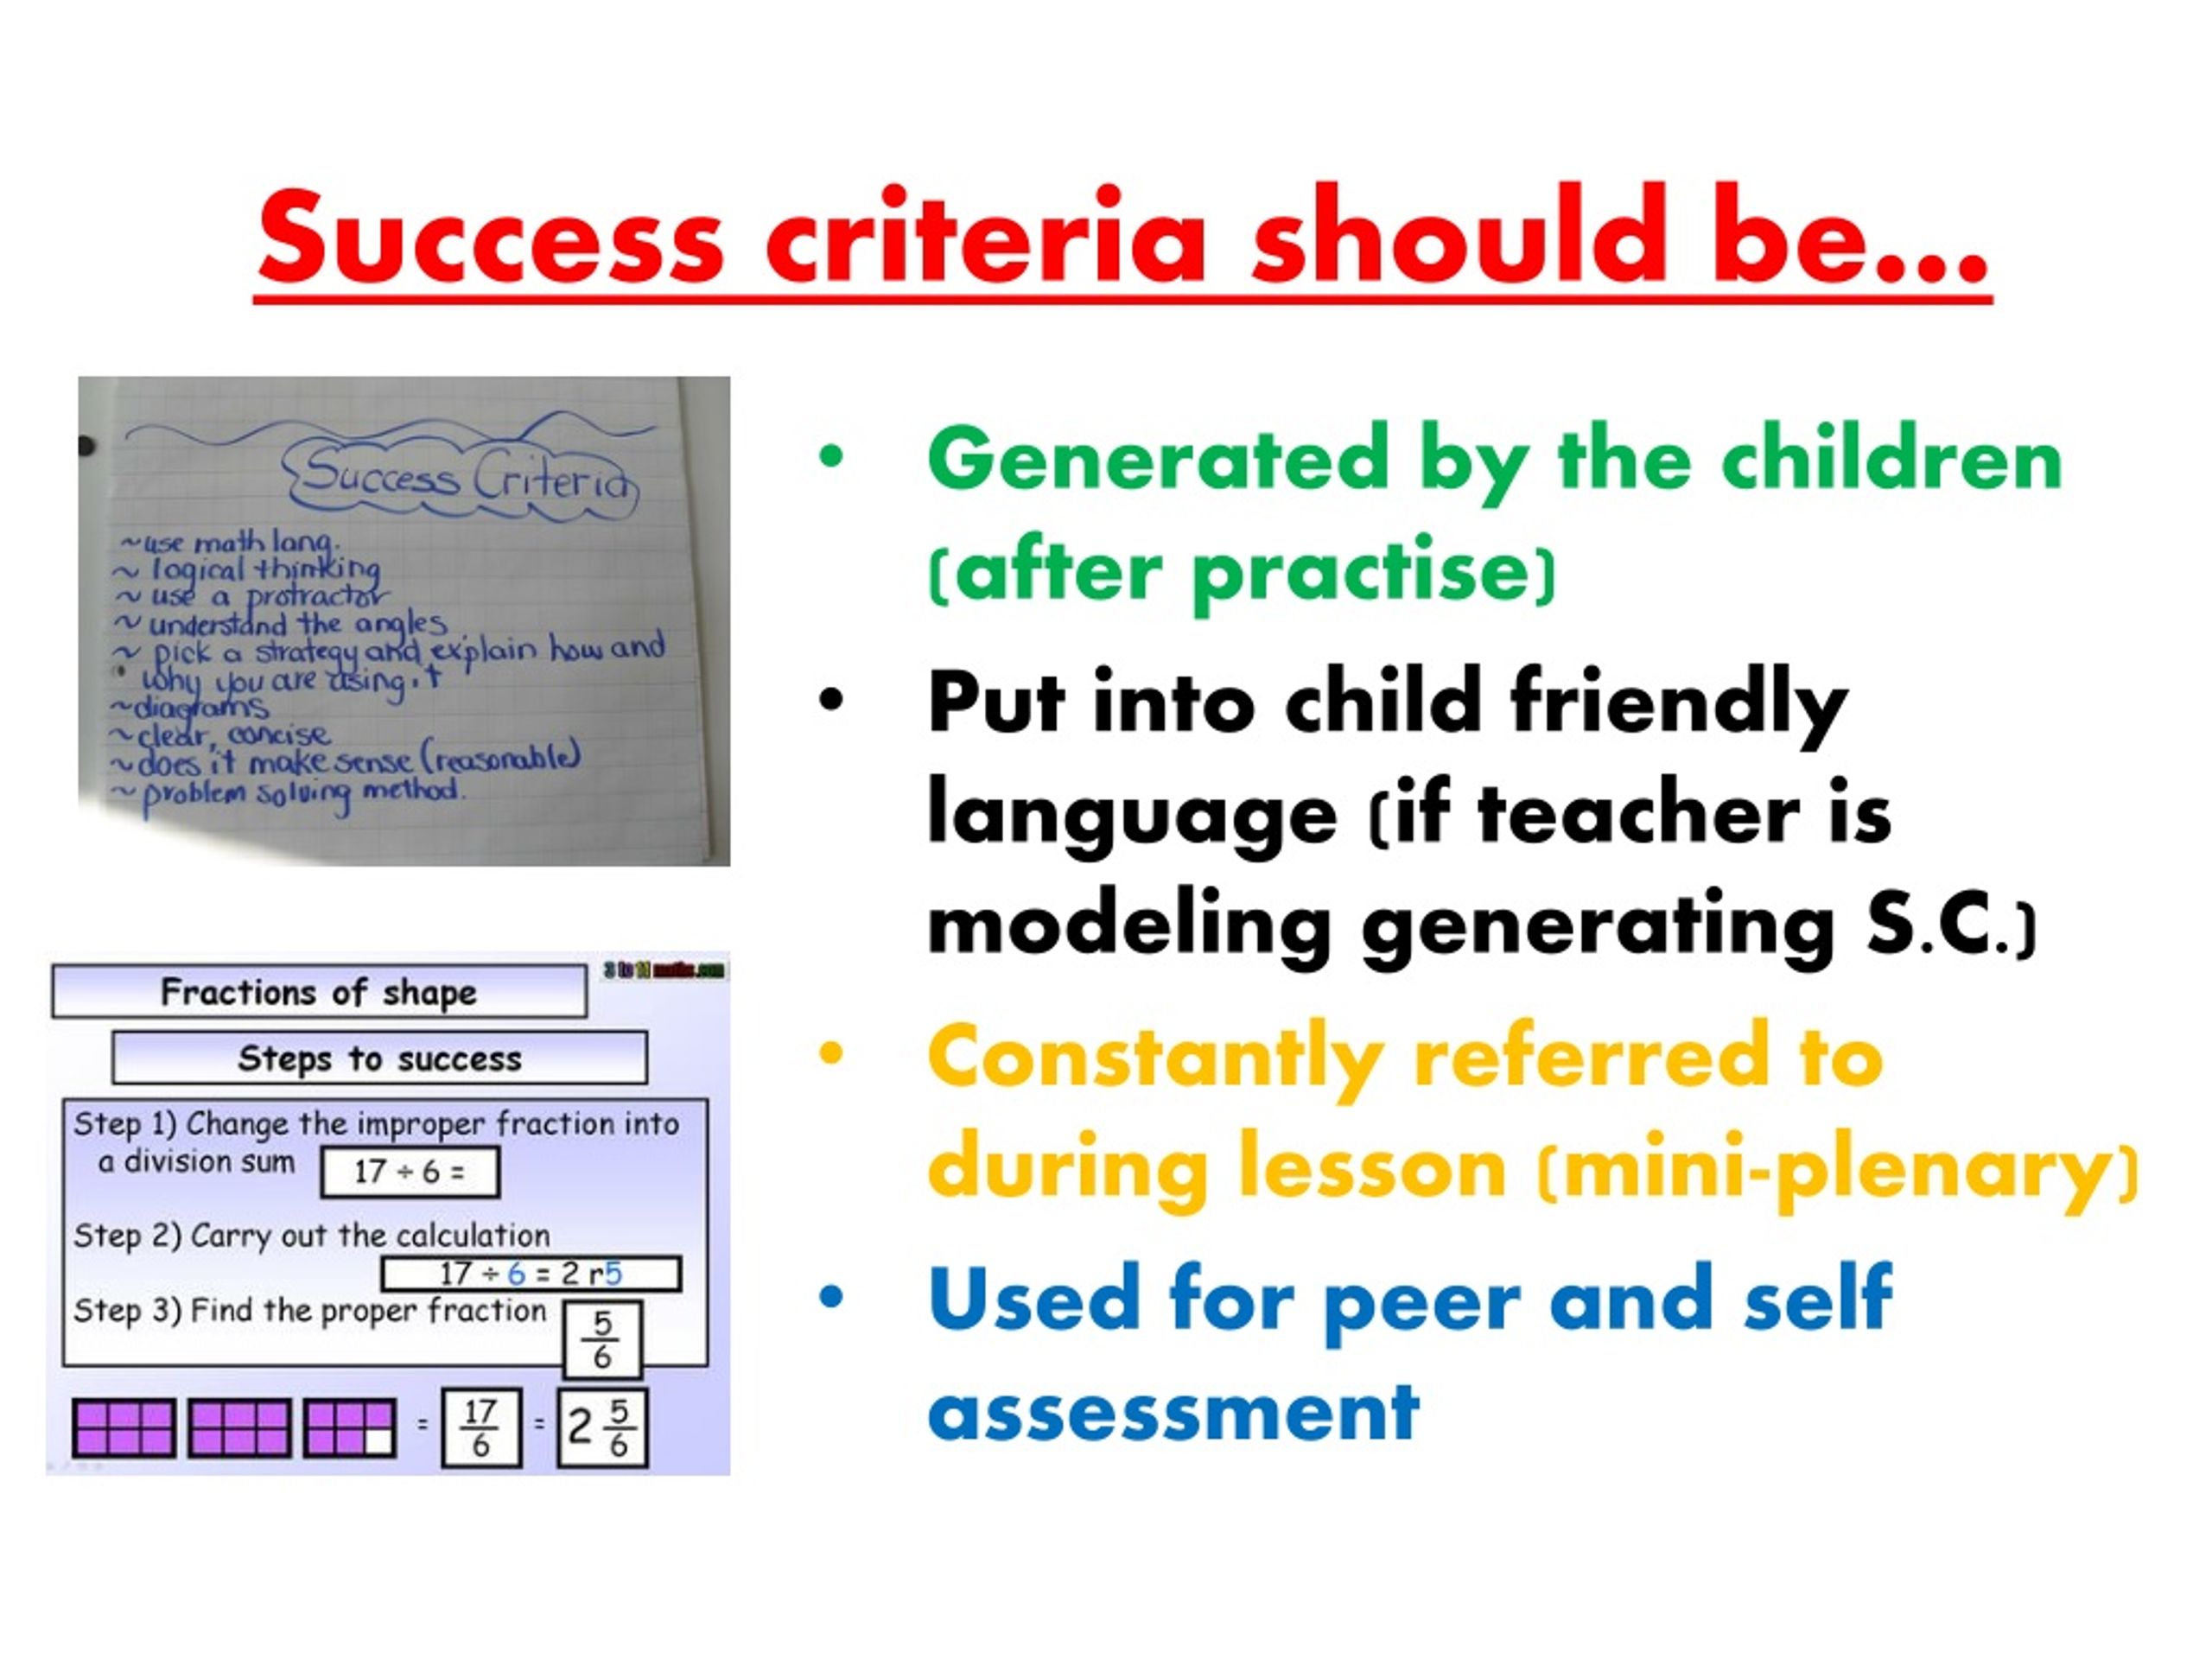 the essay success criteria